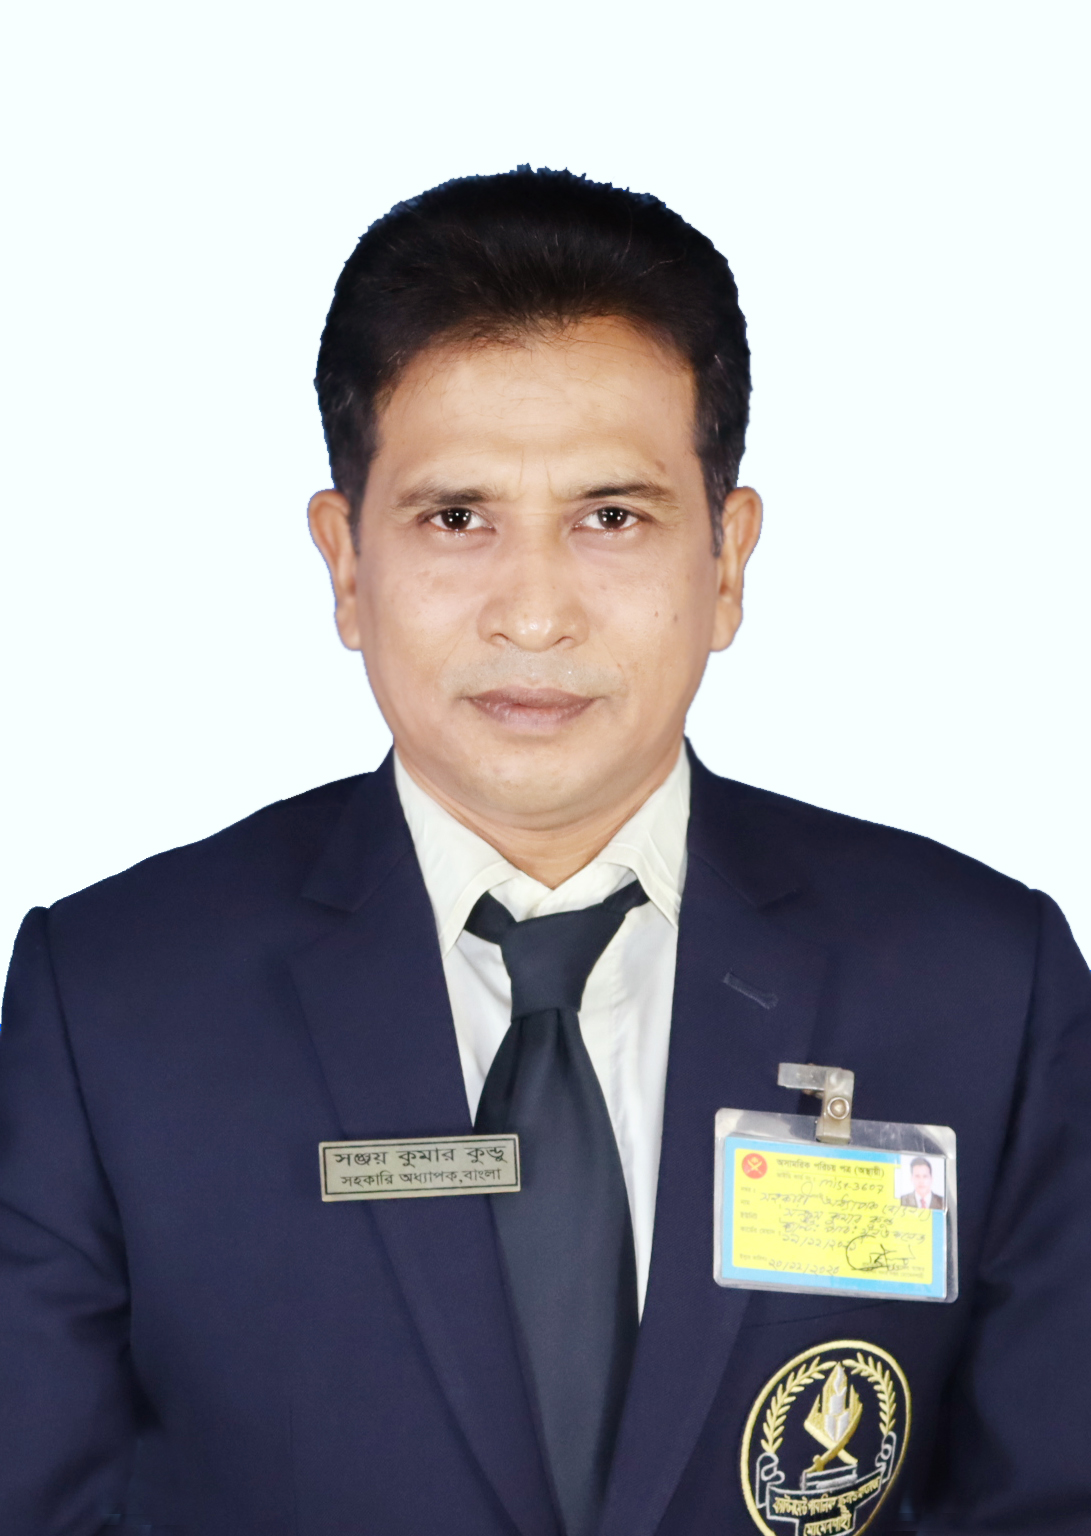 Sanjoy Kumar Kundu